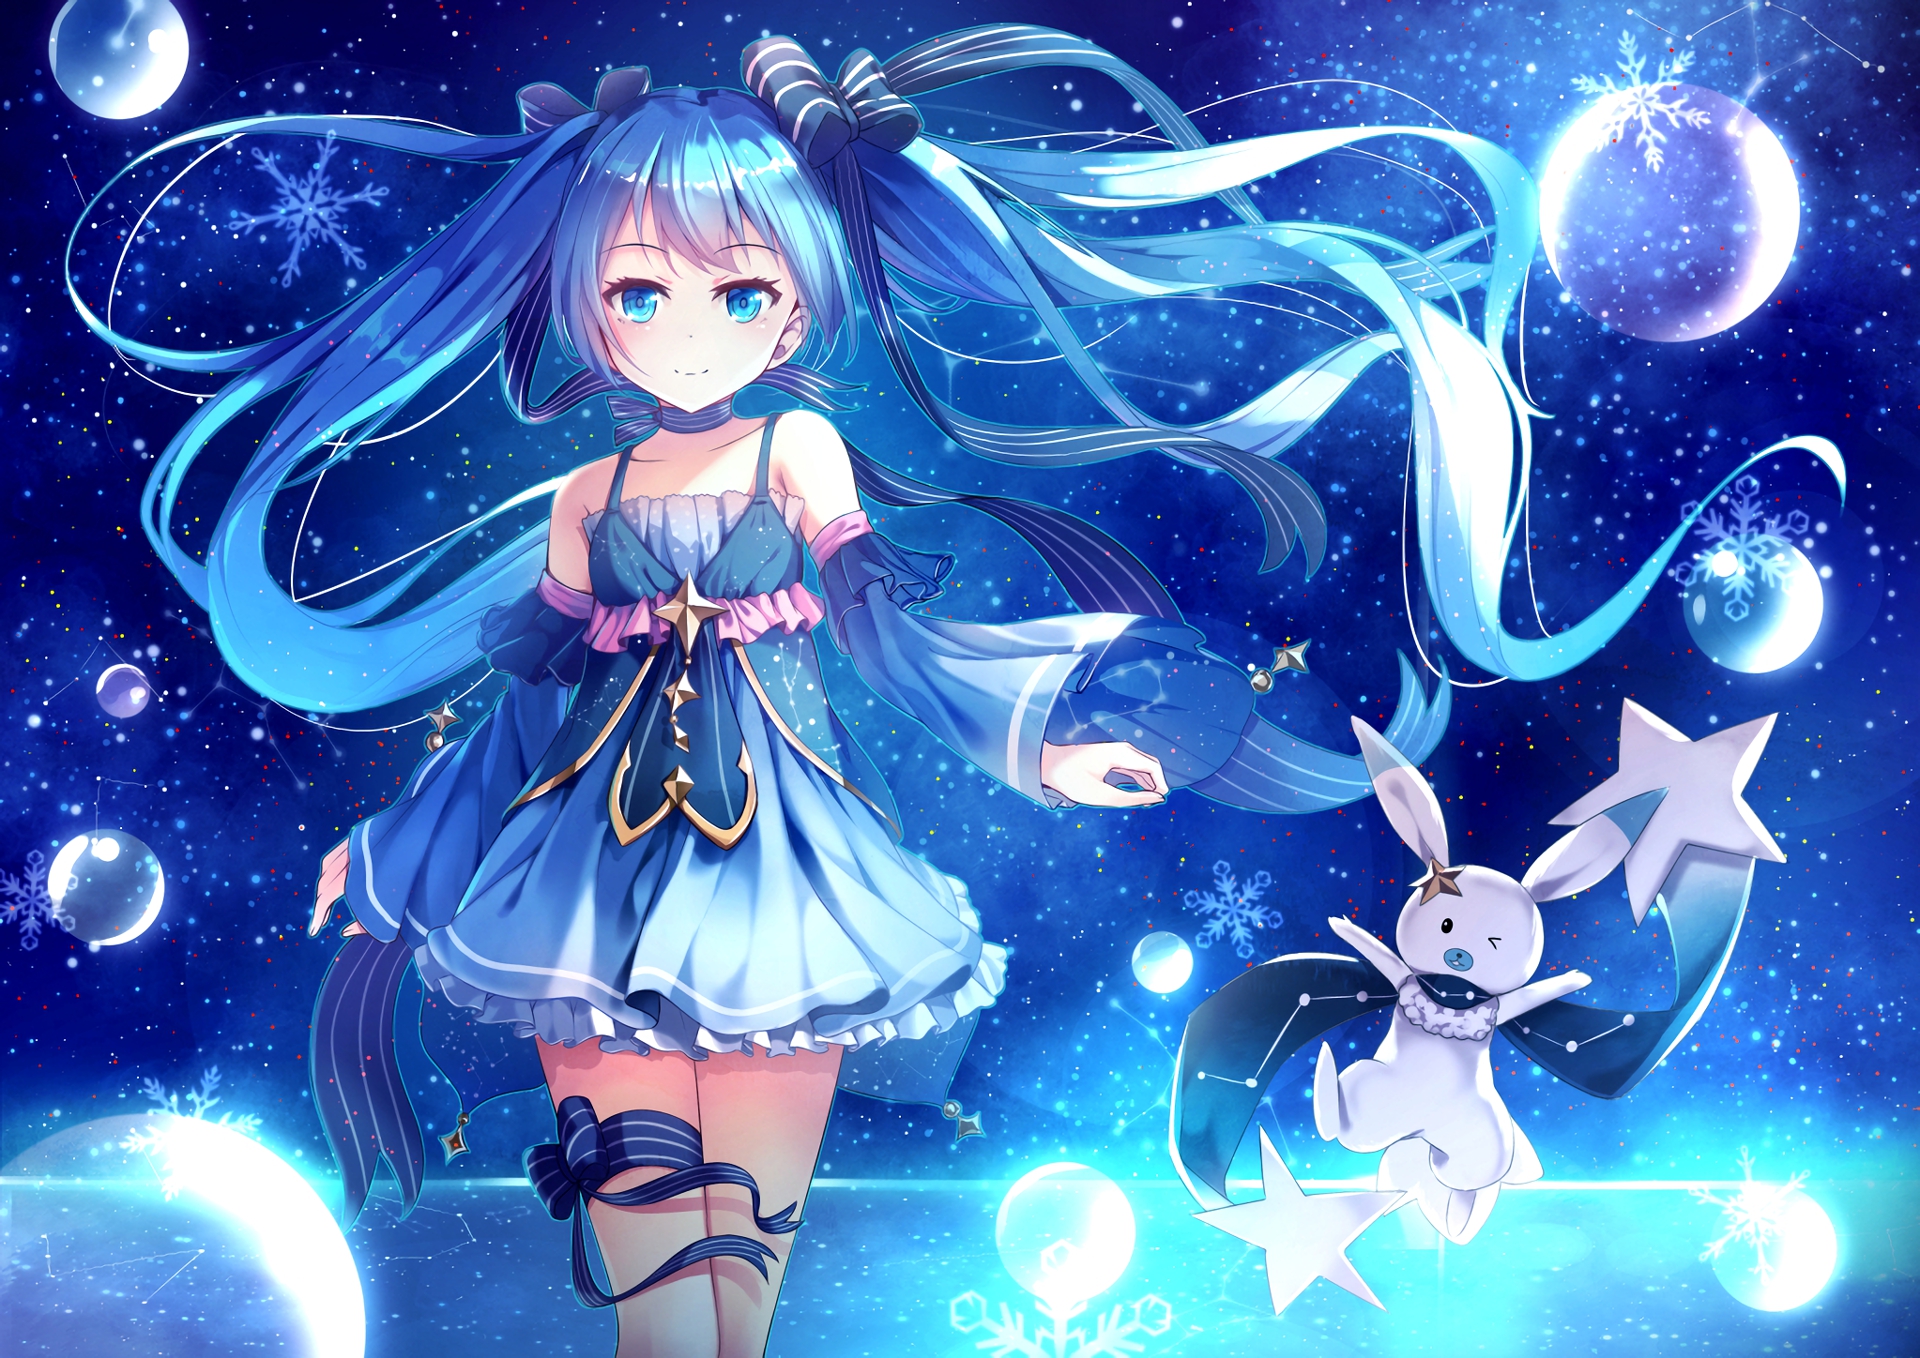 Tổng hợp hình nền anime xanh dương đẹp nhất cho desktop và mobile